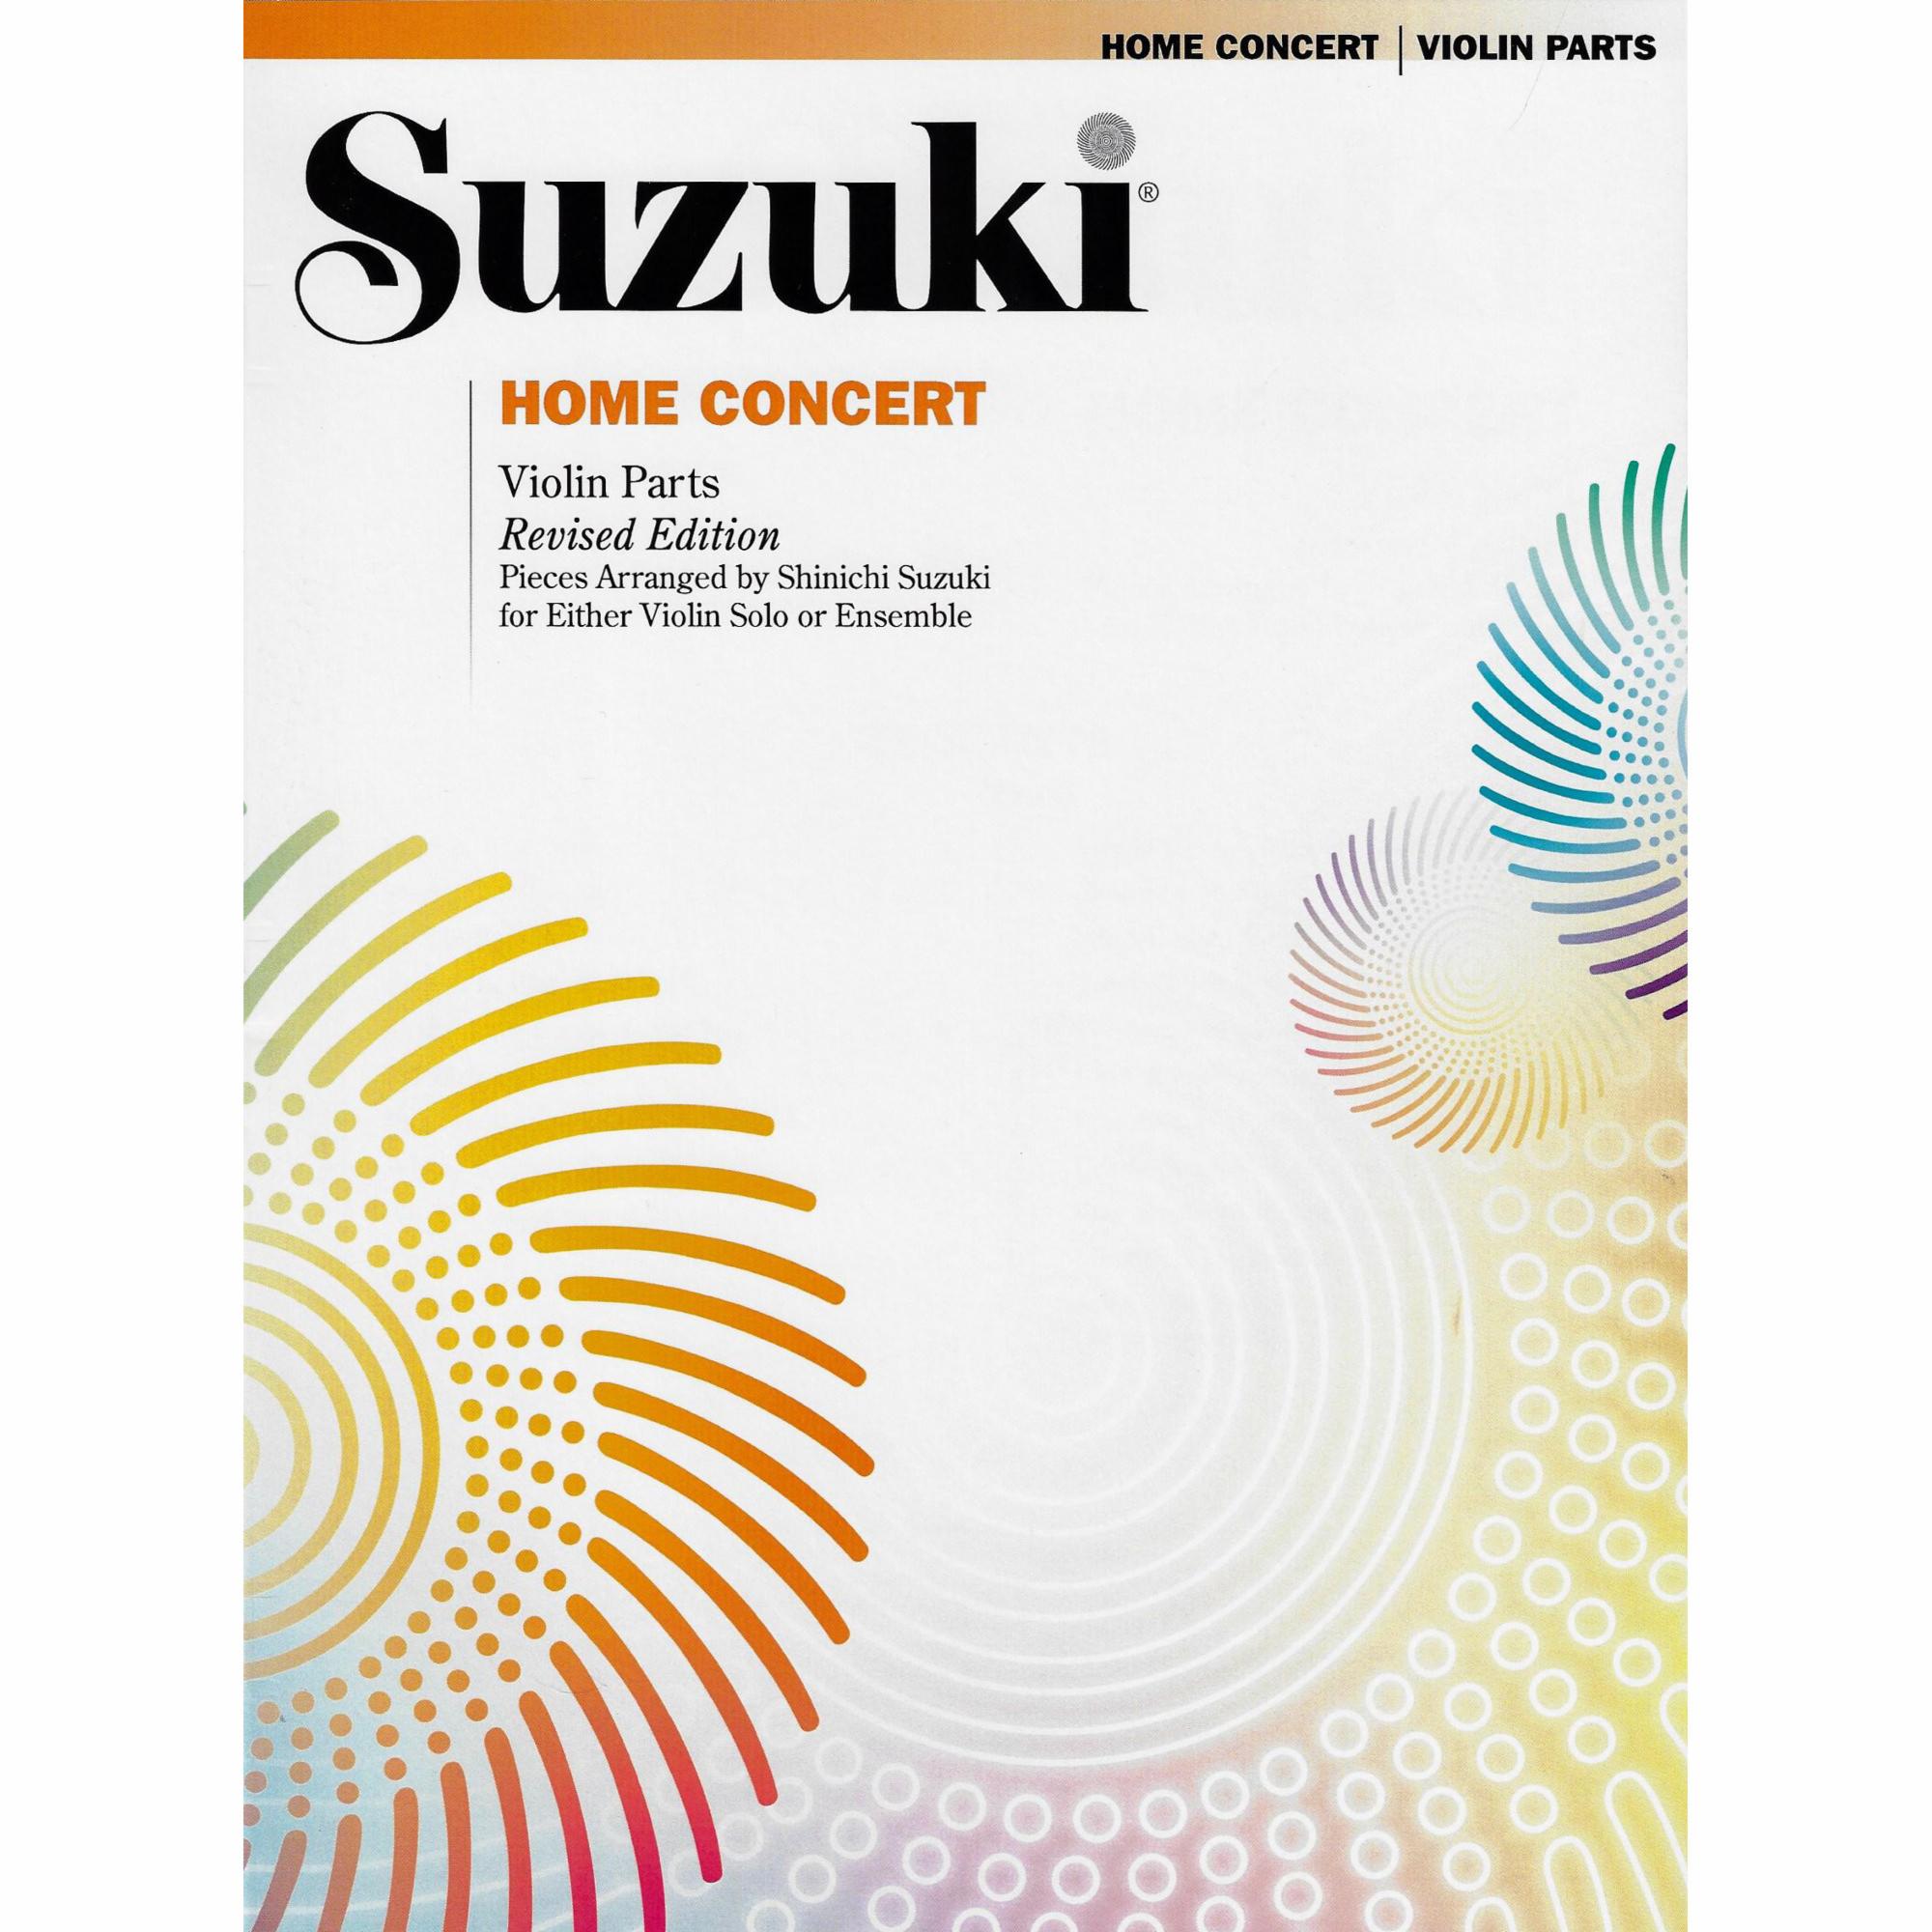 Suzuki: Home Concert for Violin and Piano